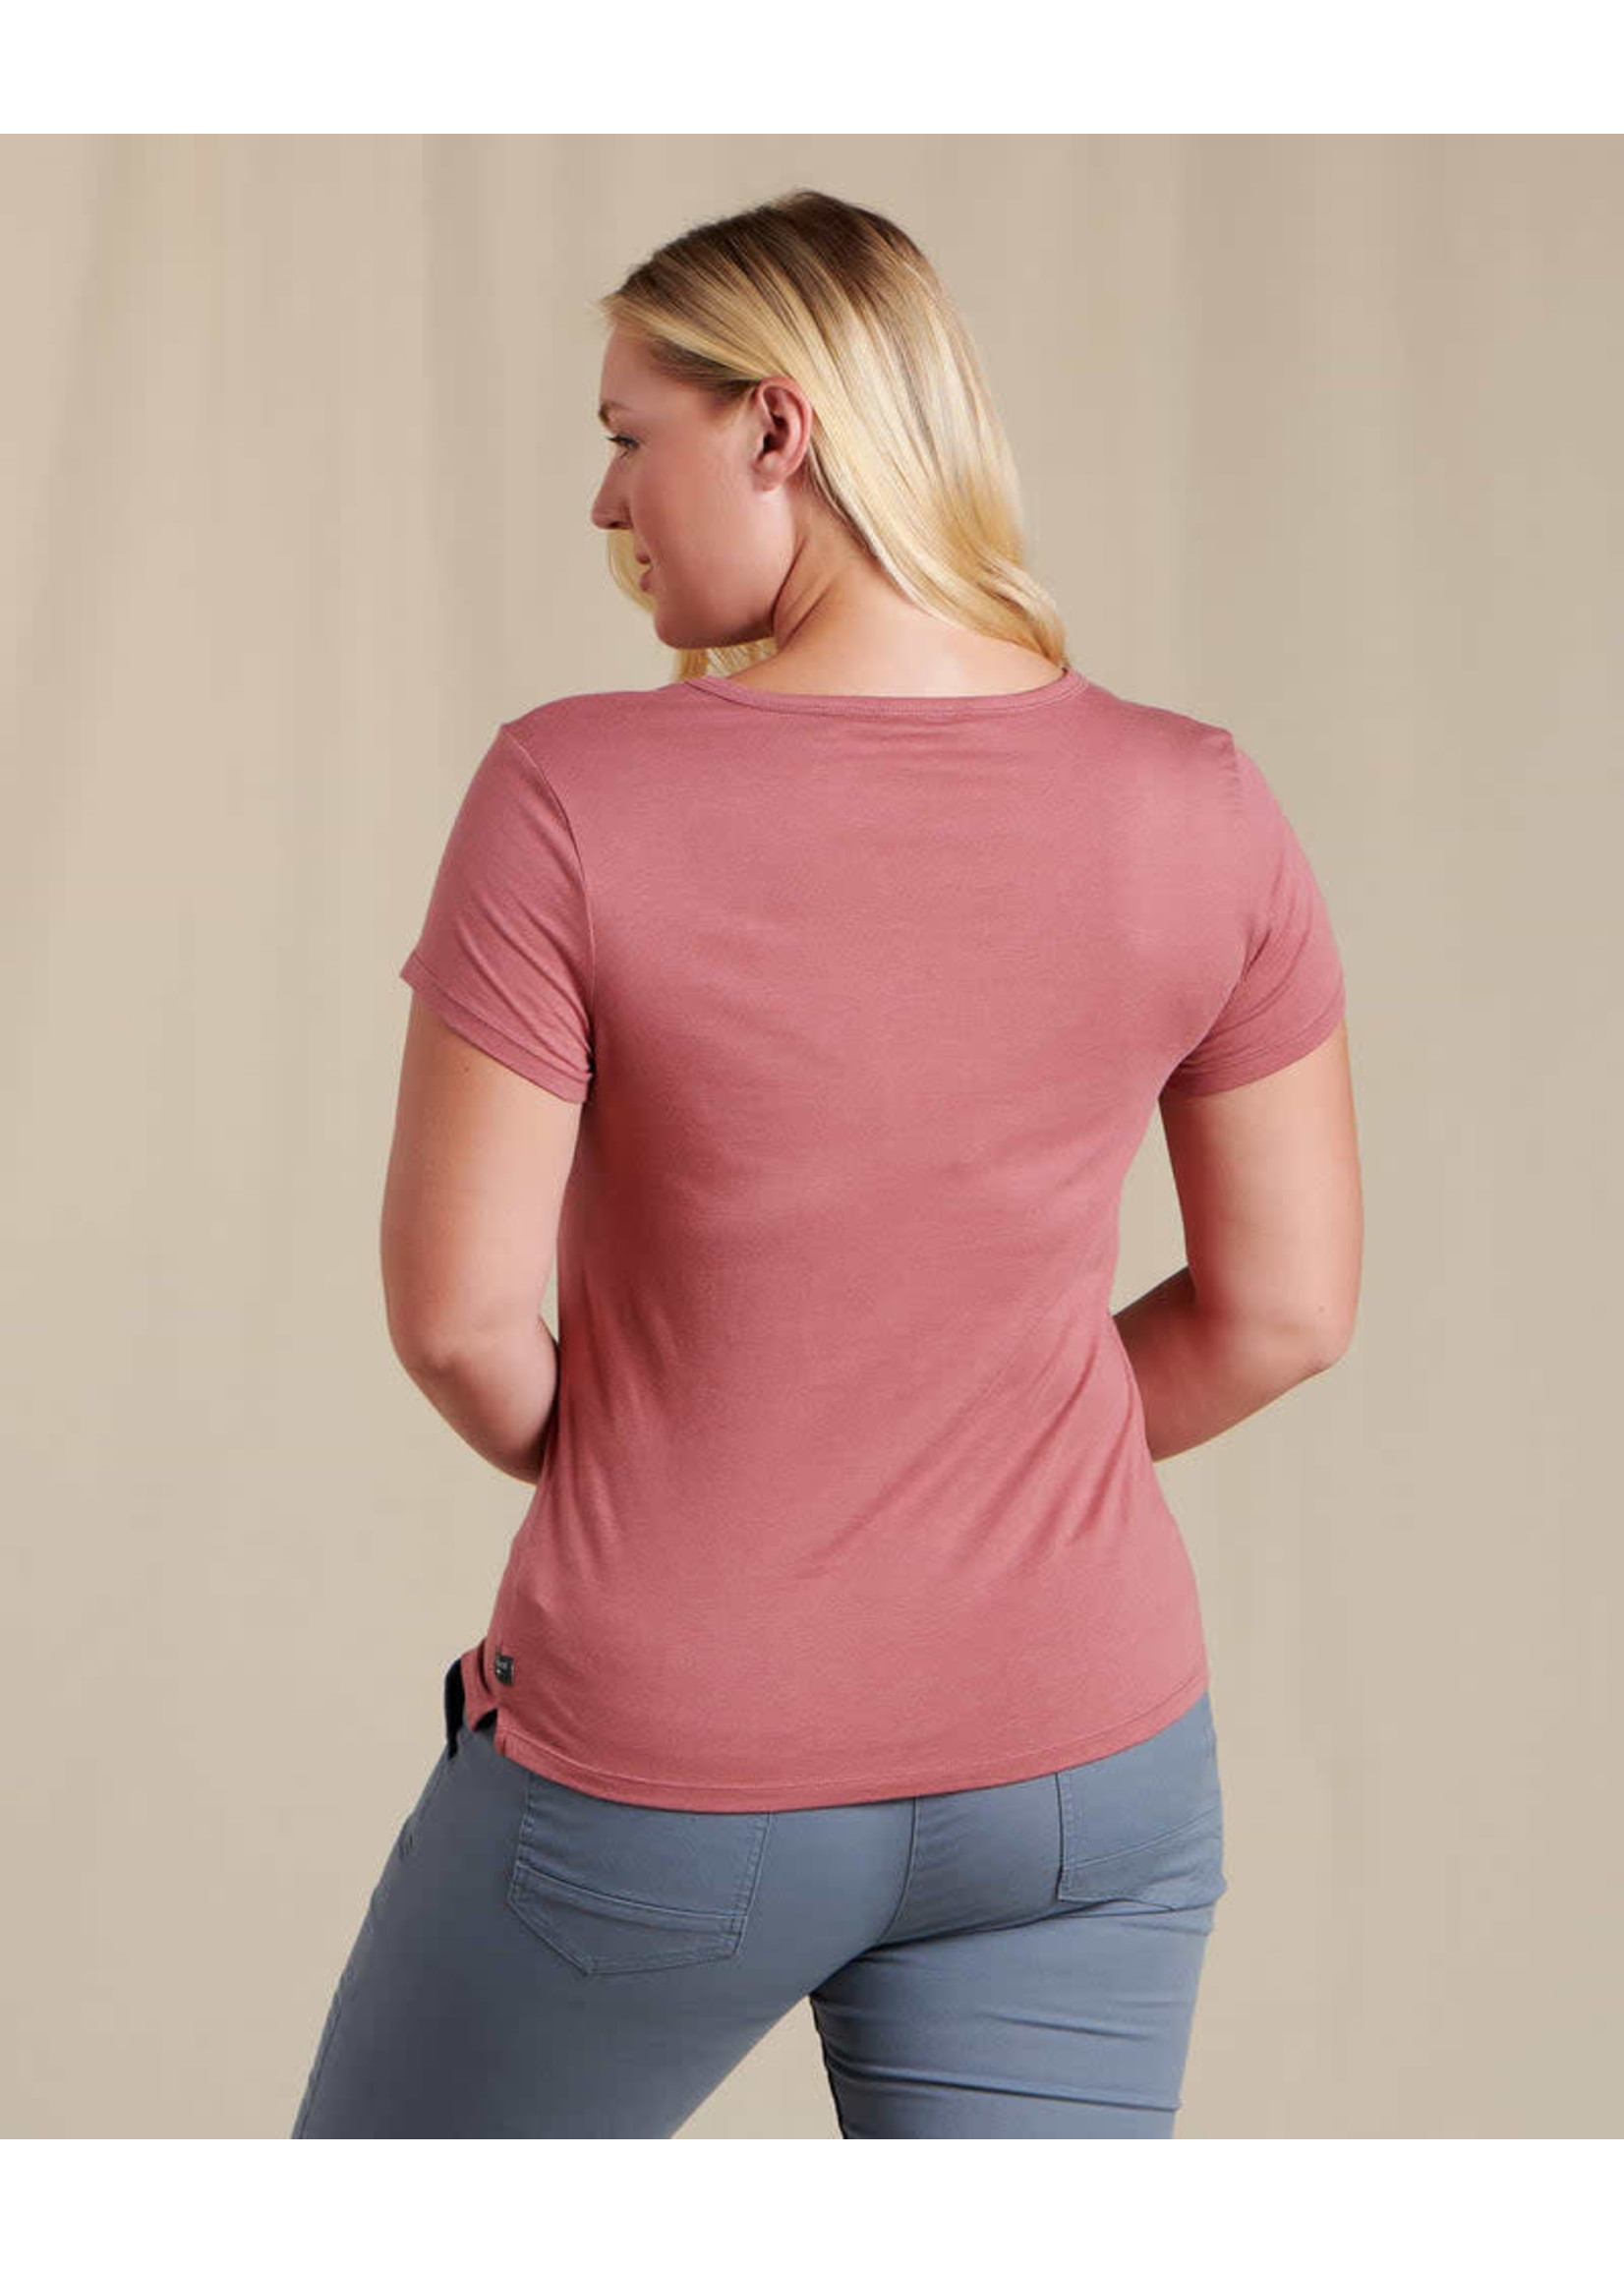 TOAD & CO T-shirt ROSE (Femme)